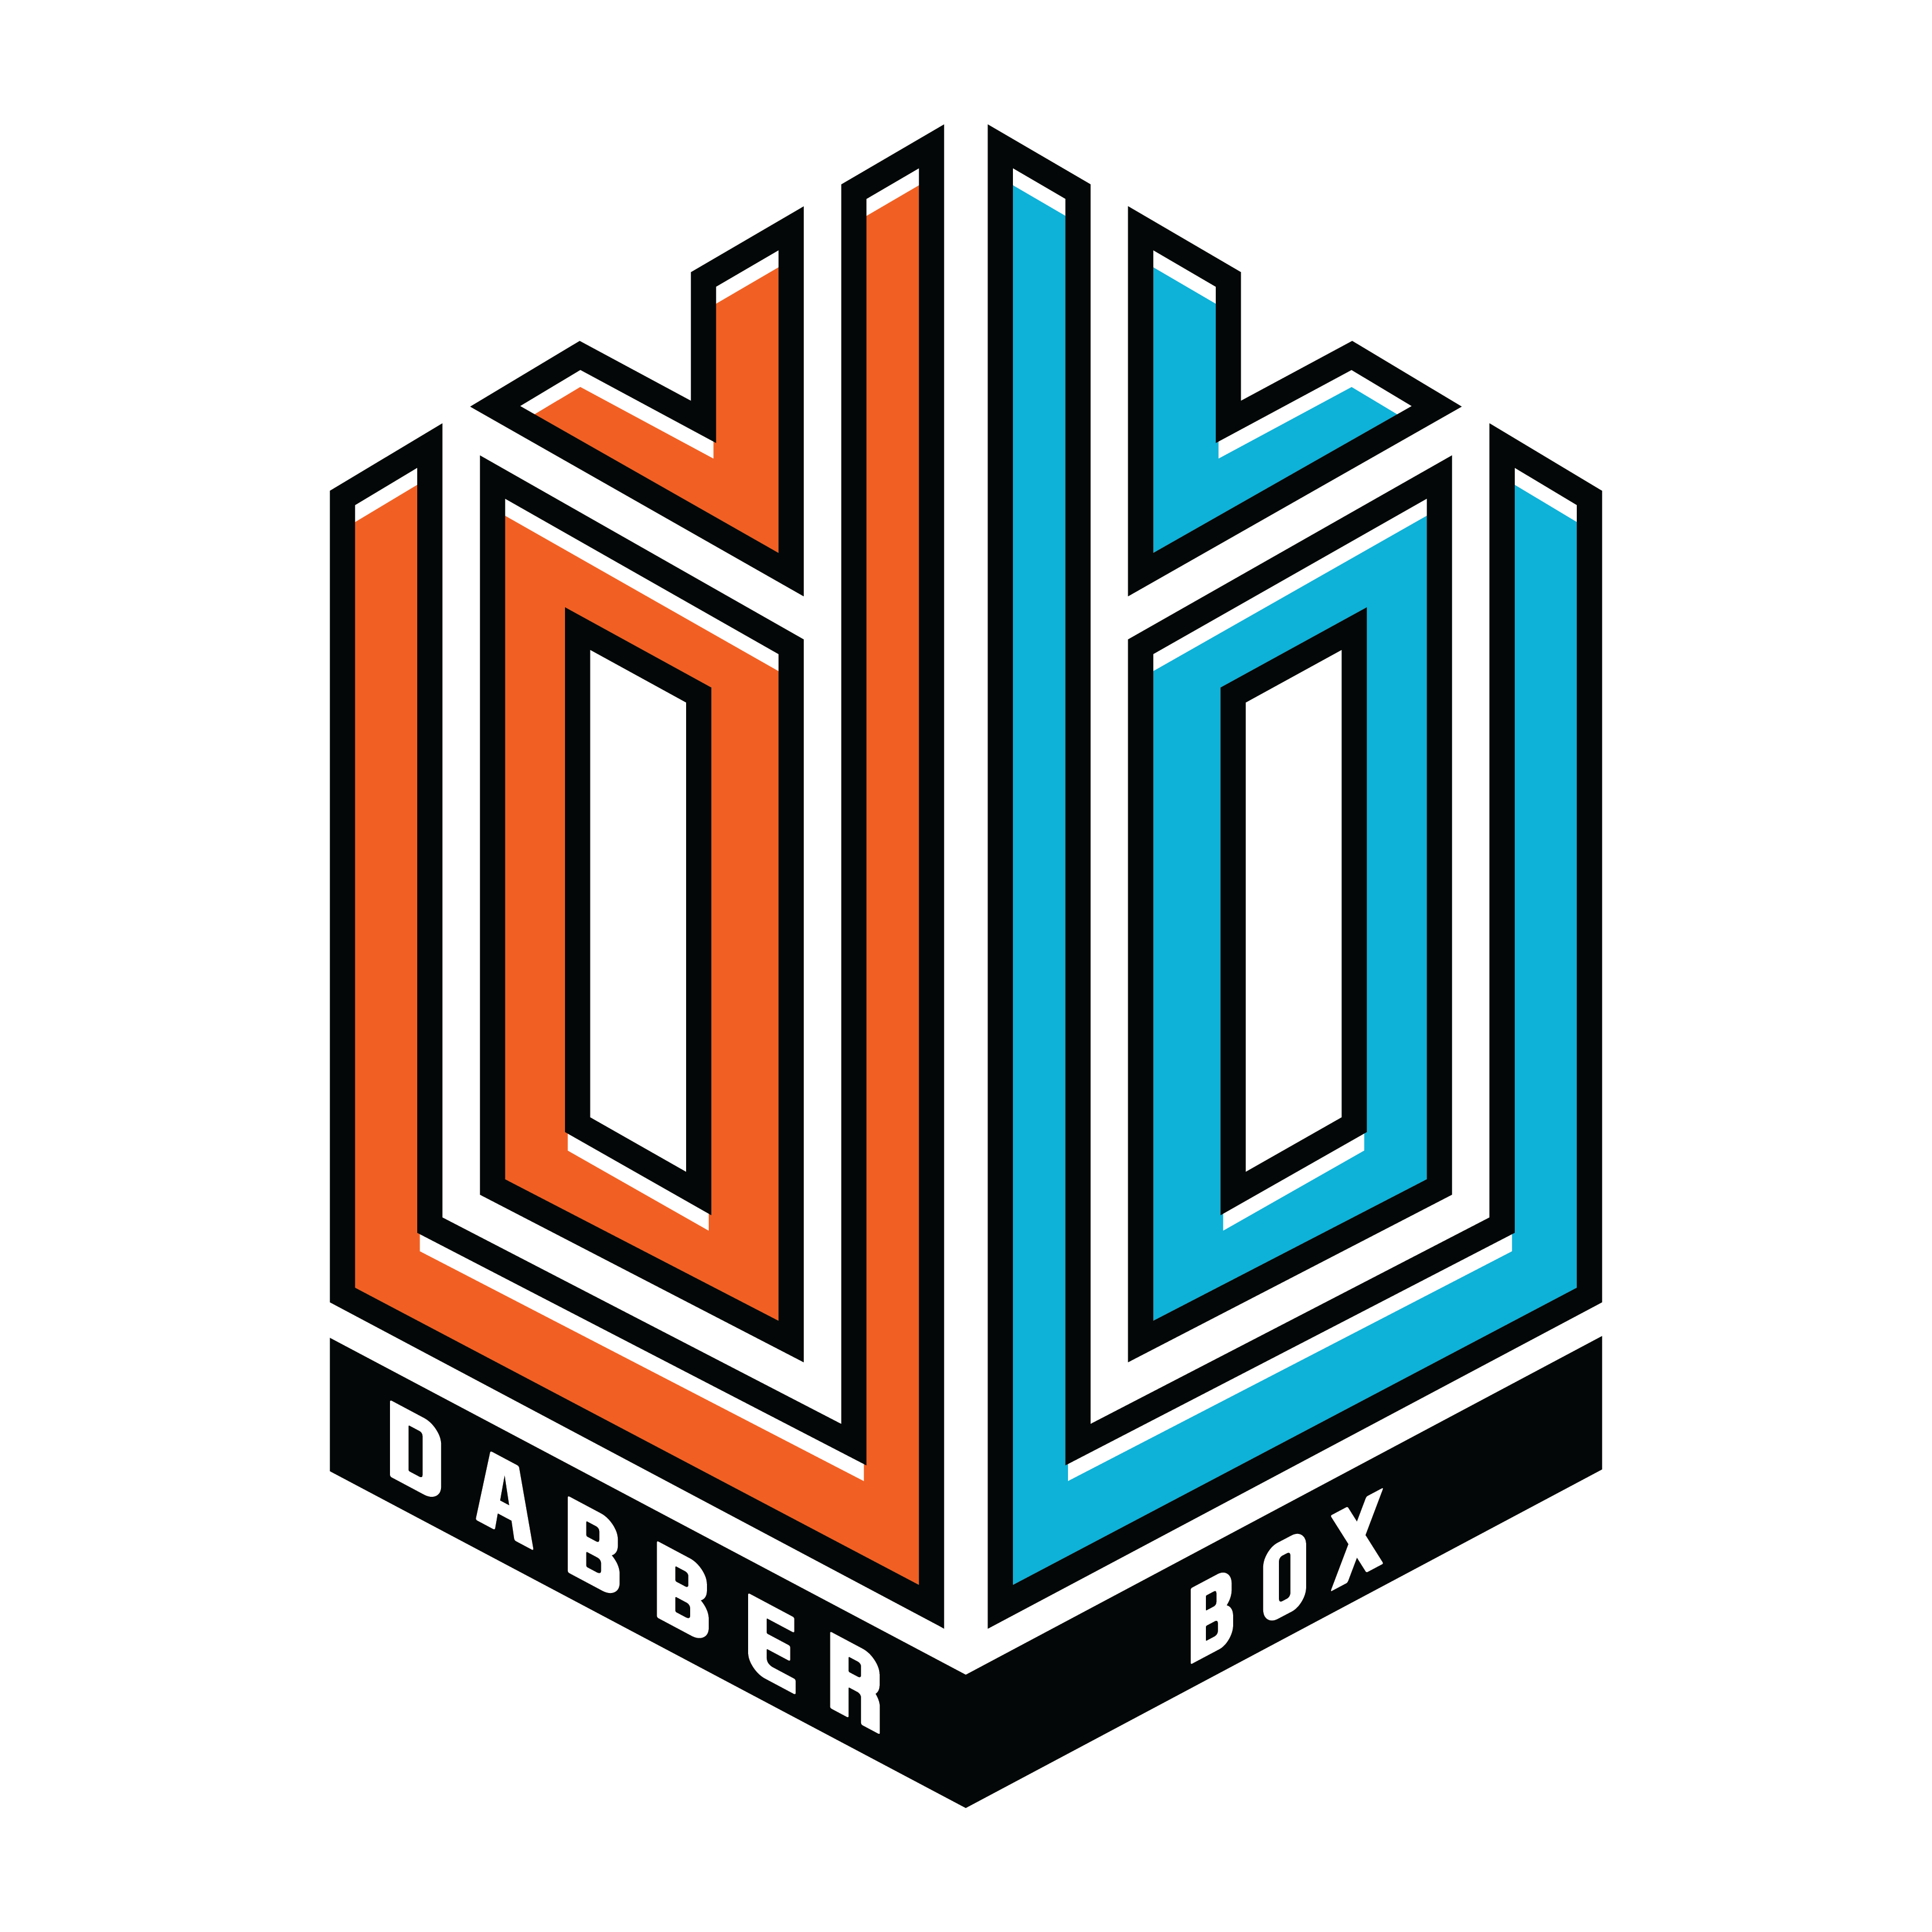 https://dabberbox.com/cdn/shop/files/Dabberbox_Logo-01_3334x.png?v=1636249260